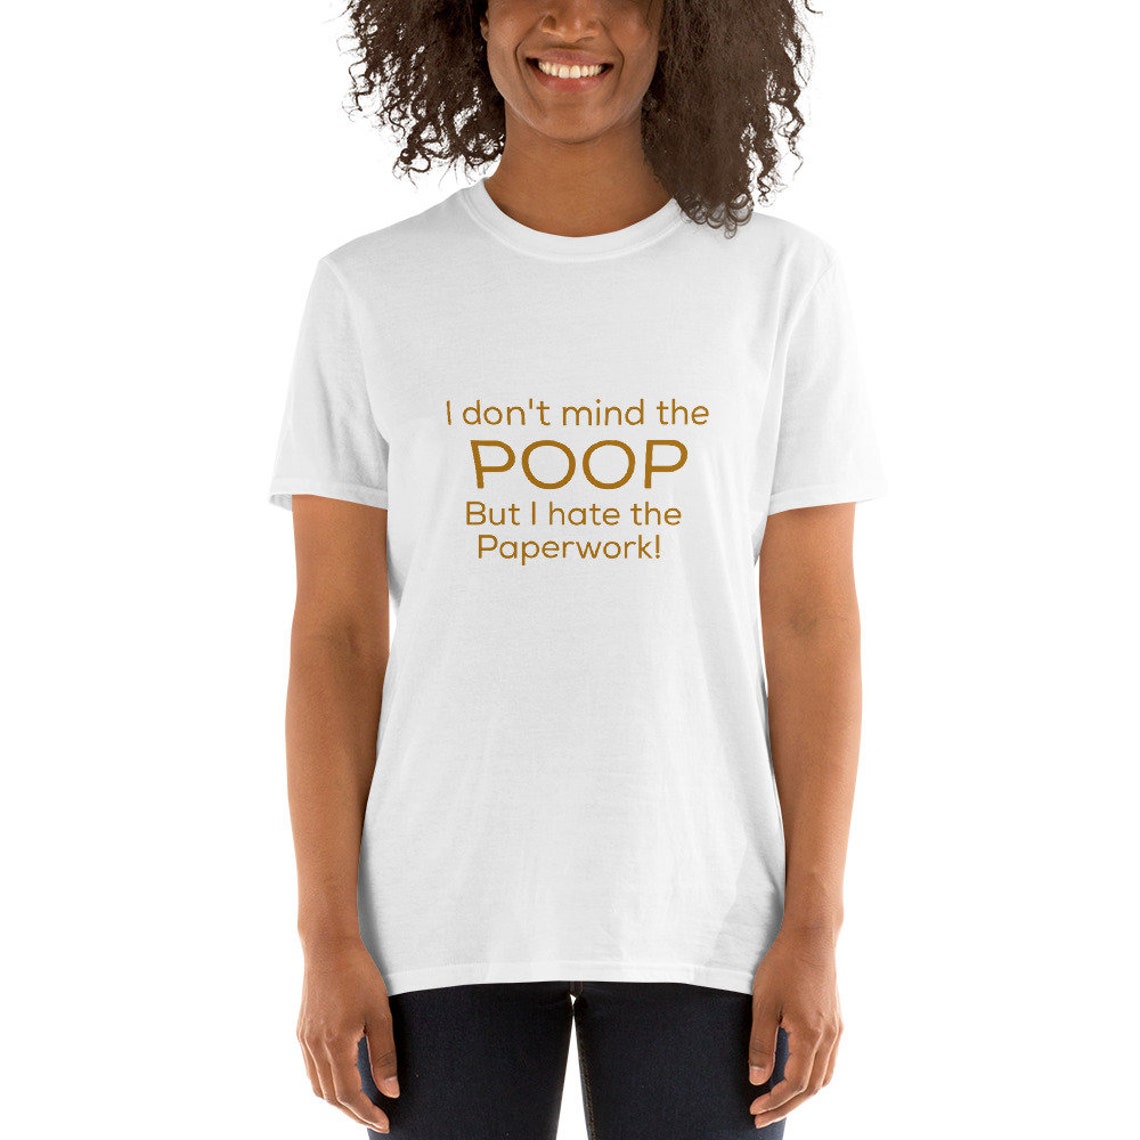 Poop Poop Tshirt Potty Humor Funny Gross Disgusting I | Etsy